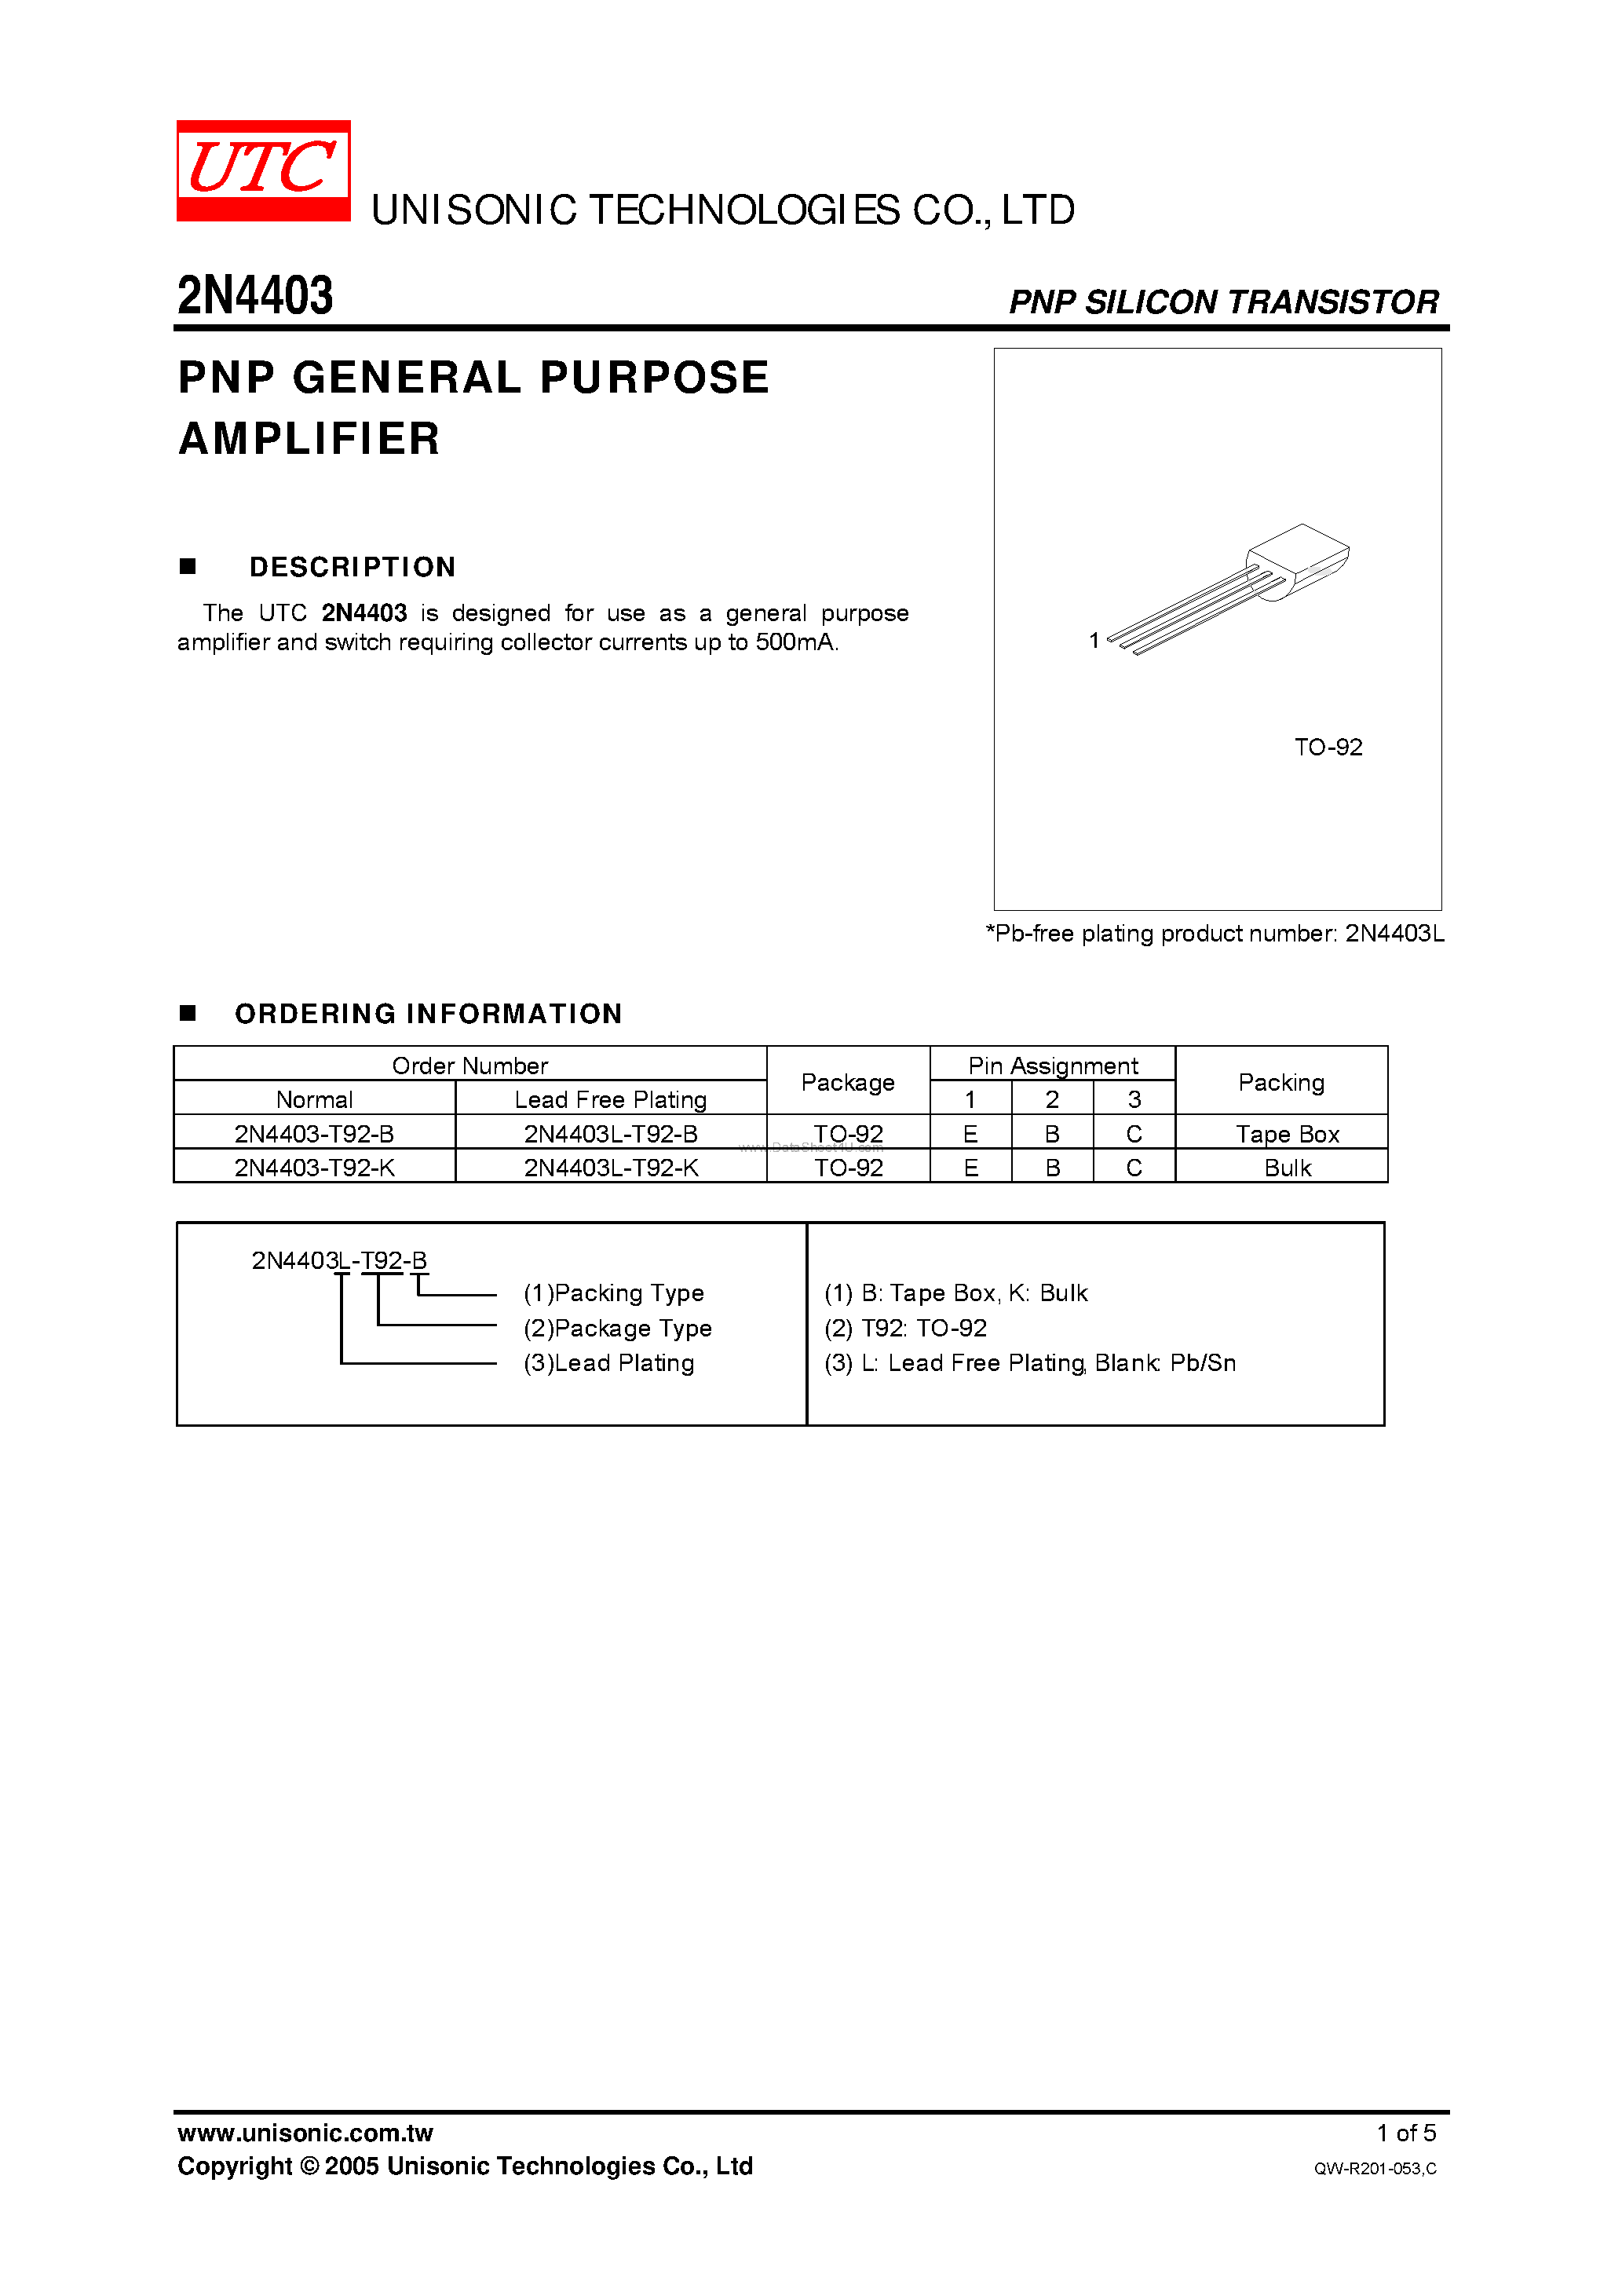 Datasheet 2N4403 - PNP GENERAL PURPOSE AMPLIFIER page 1